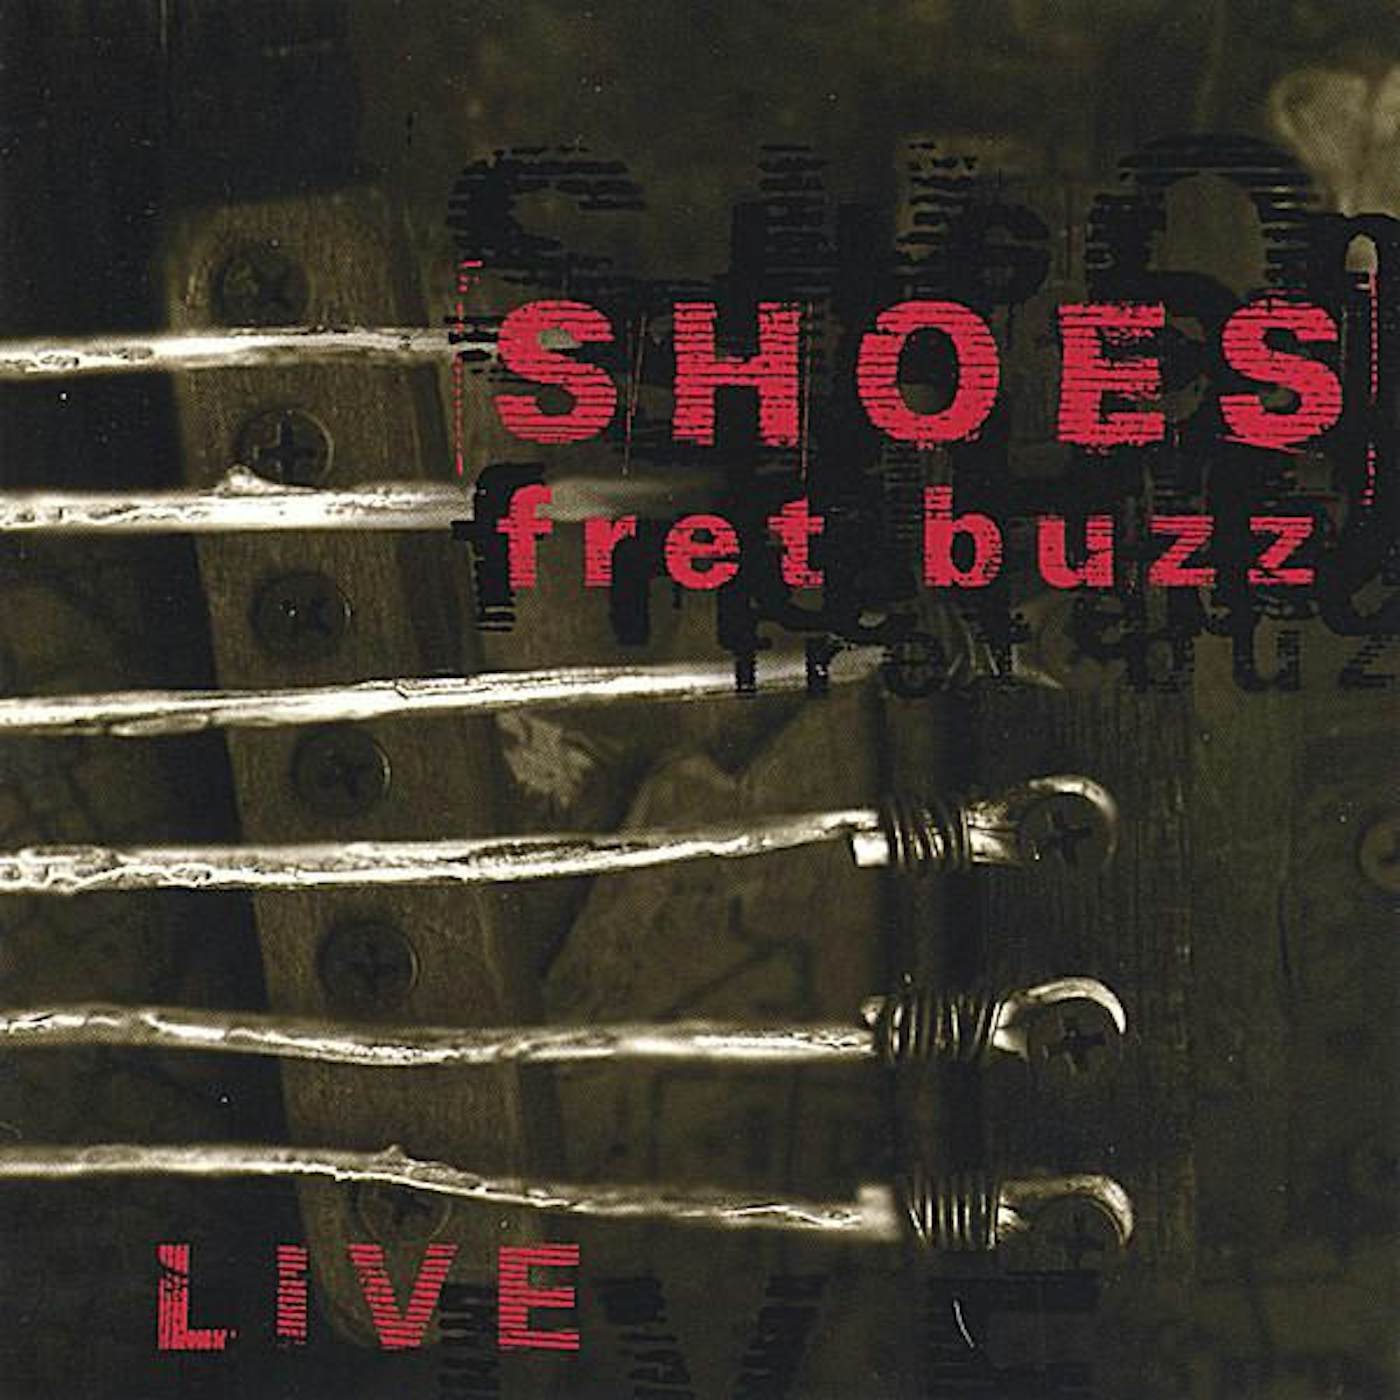 Shoes FRET BUZZ CD